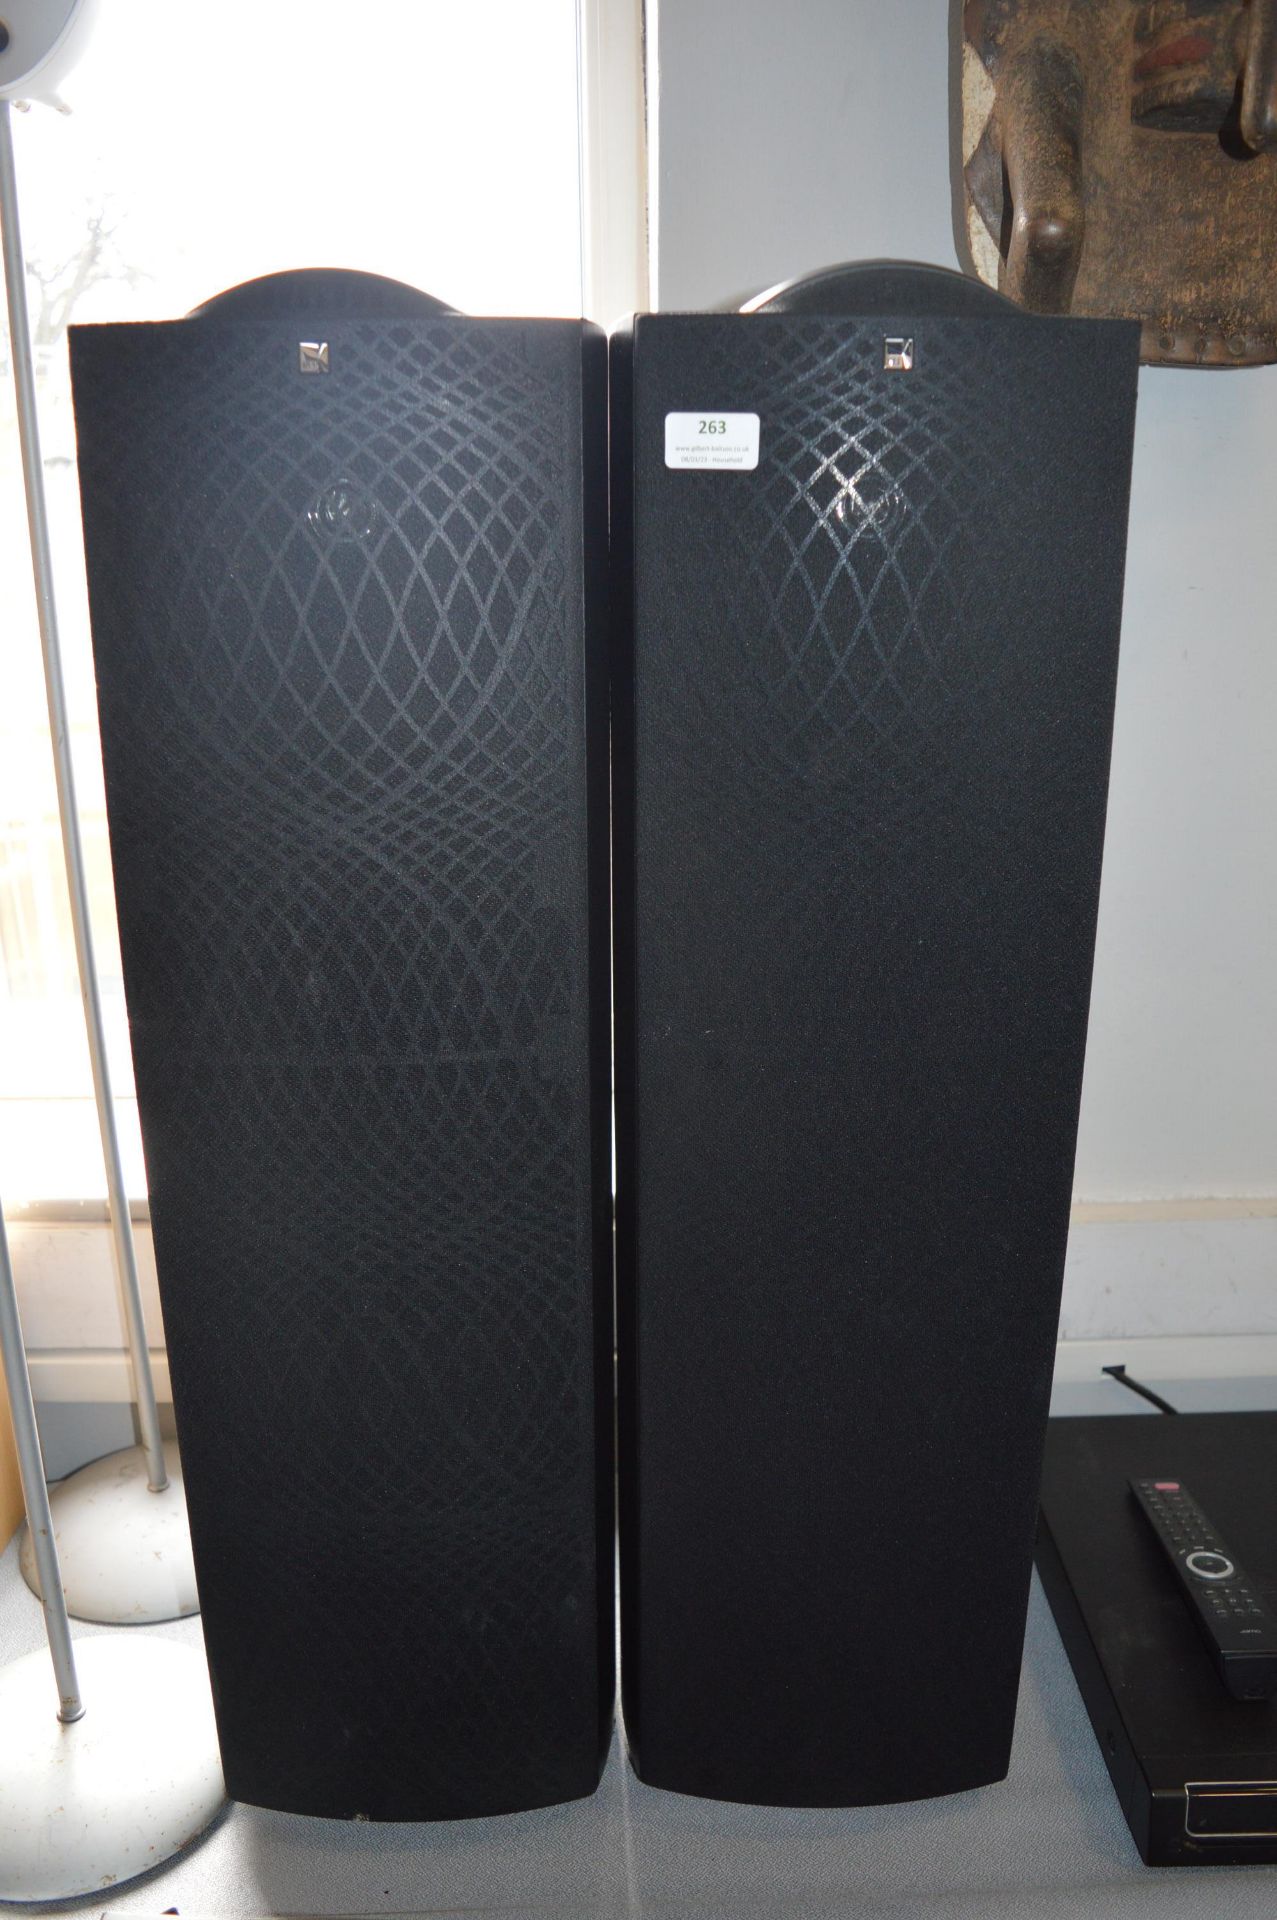 Pair of KEF Q3 Series Speakers